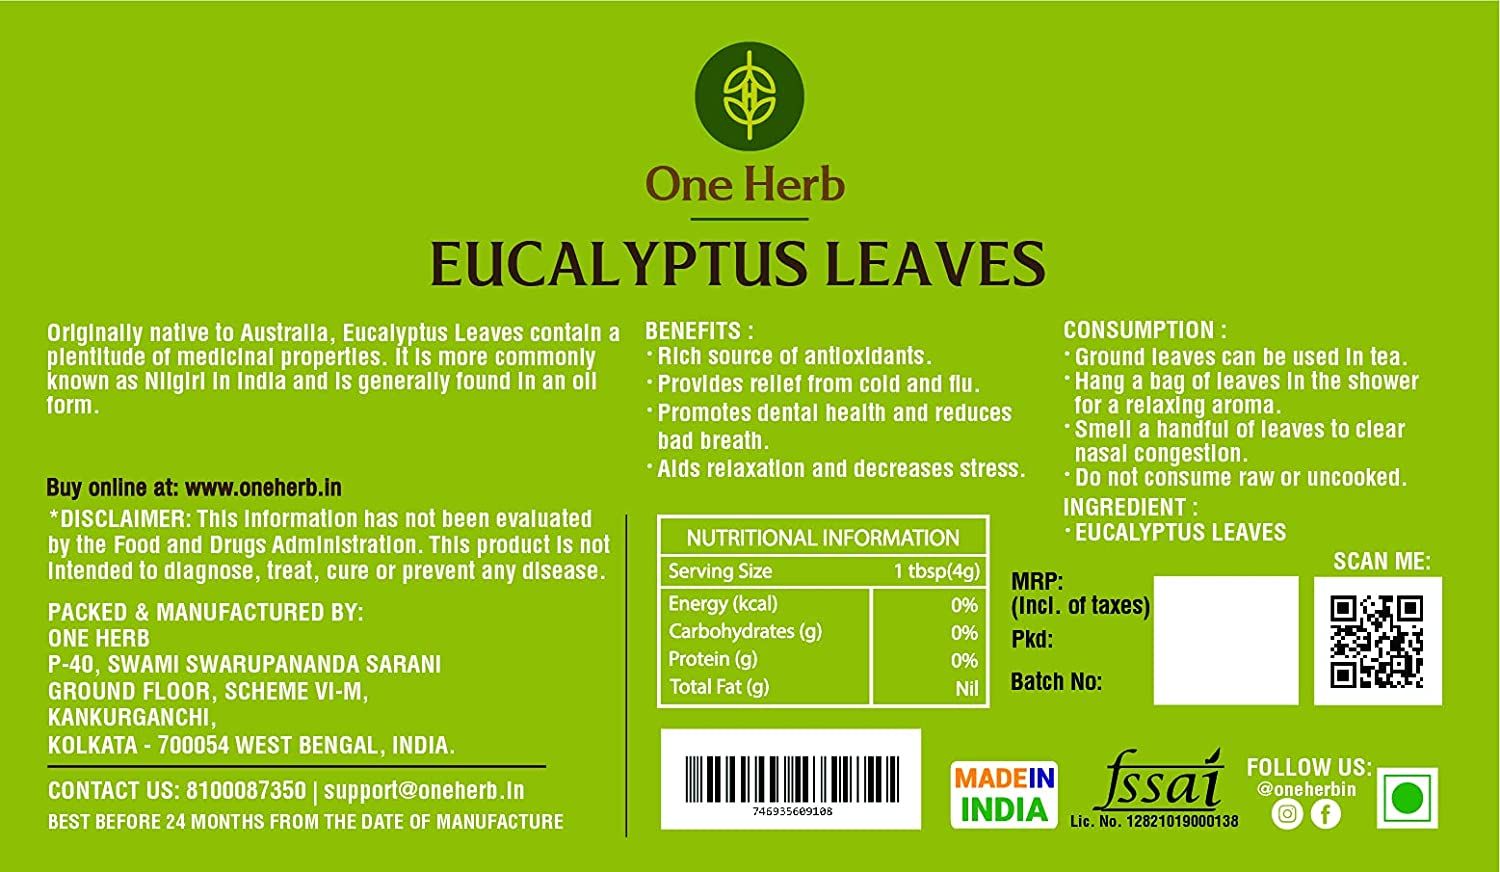 One Herb Eucalyptus Tea Leaves Image